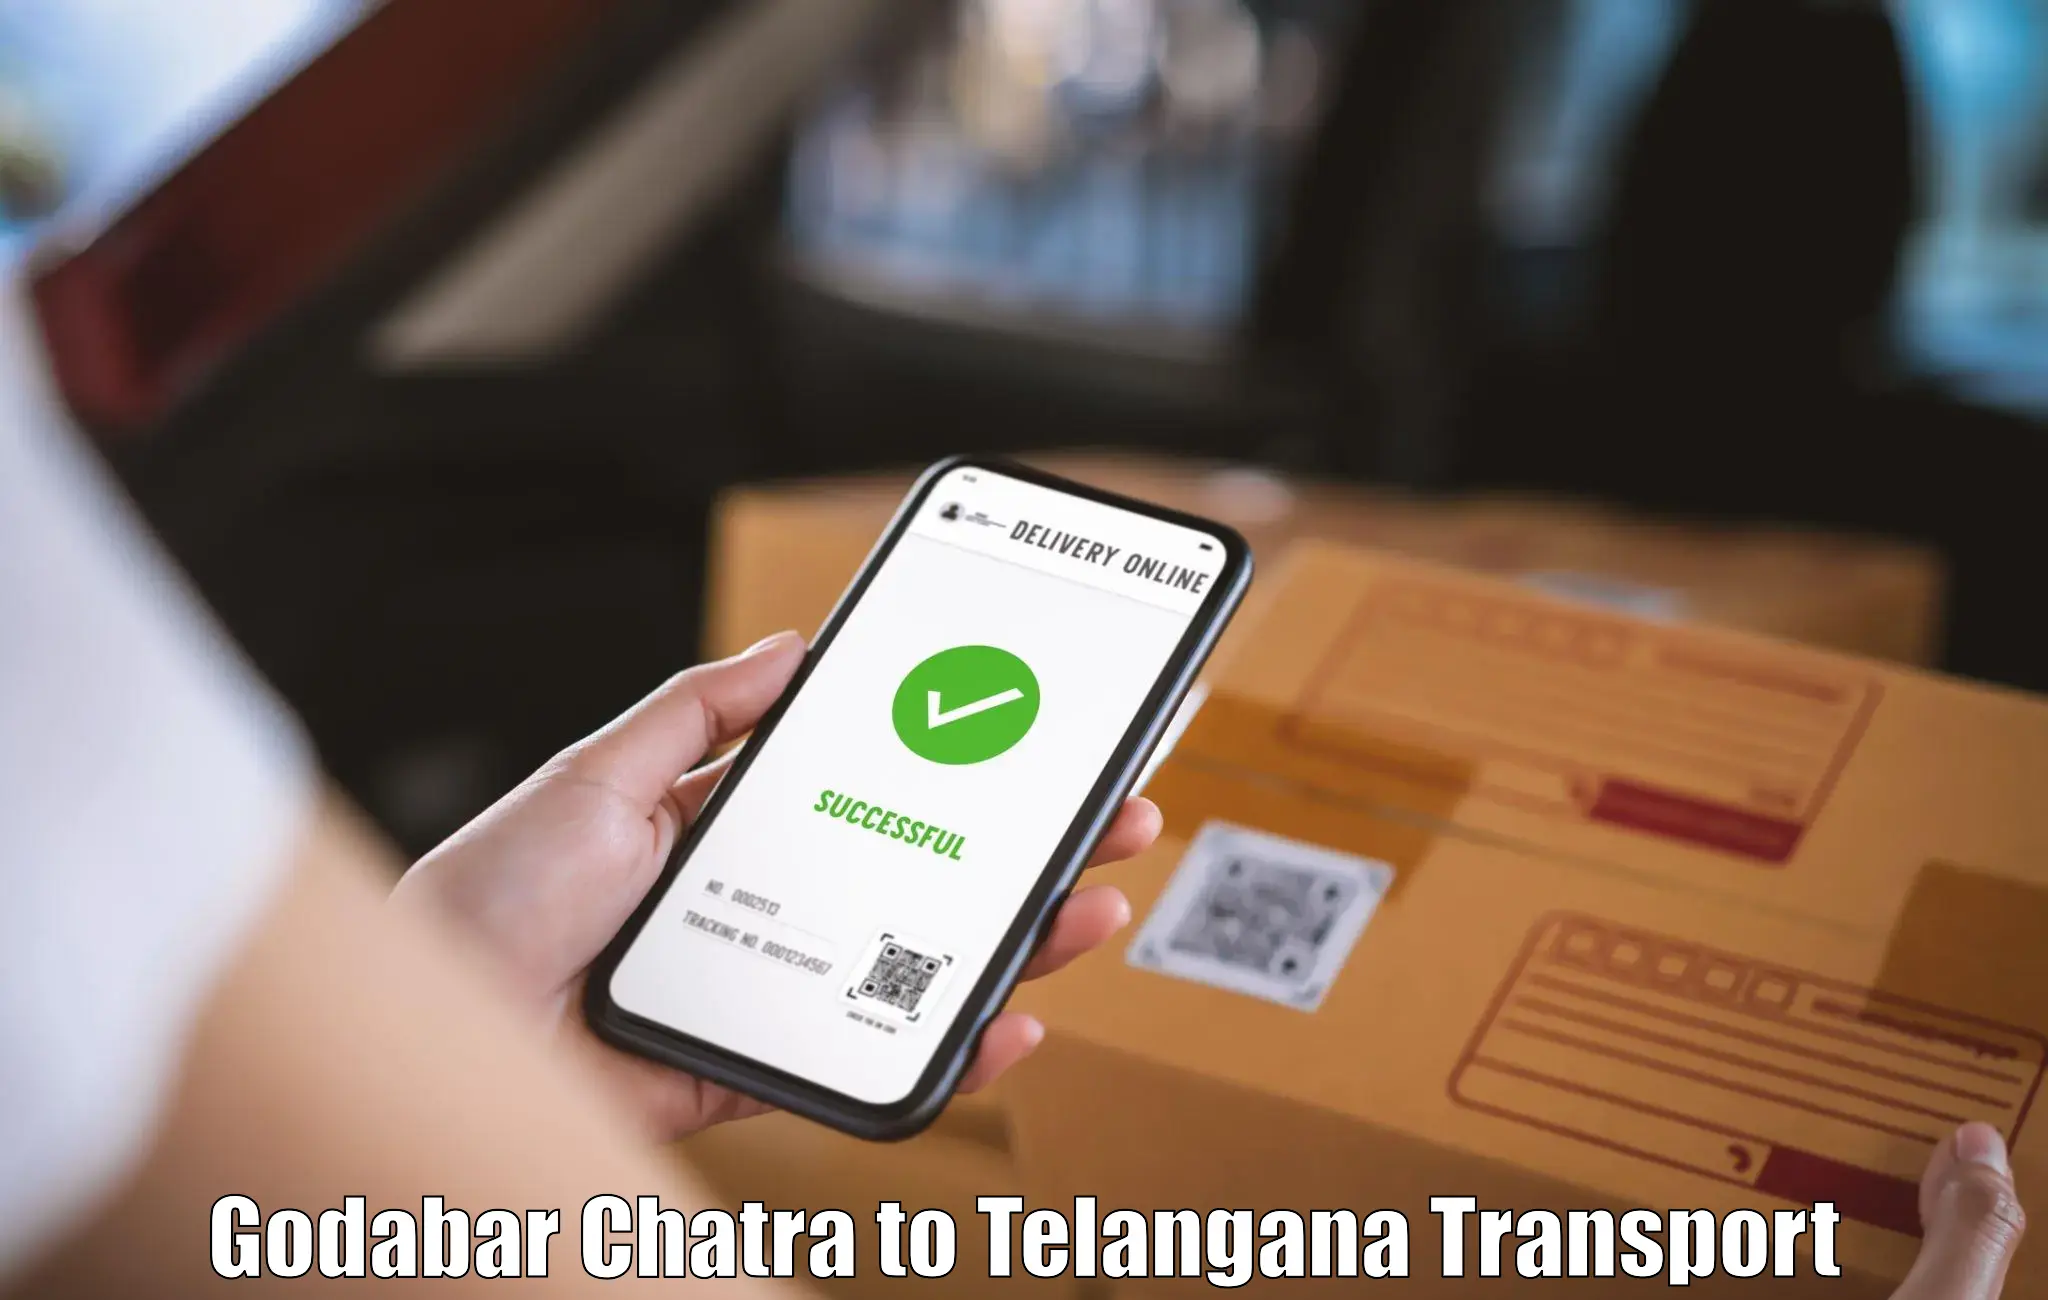 International cargo transportation services Godabar Chatra to Huzur Nagar